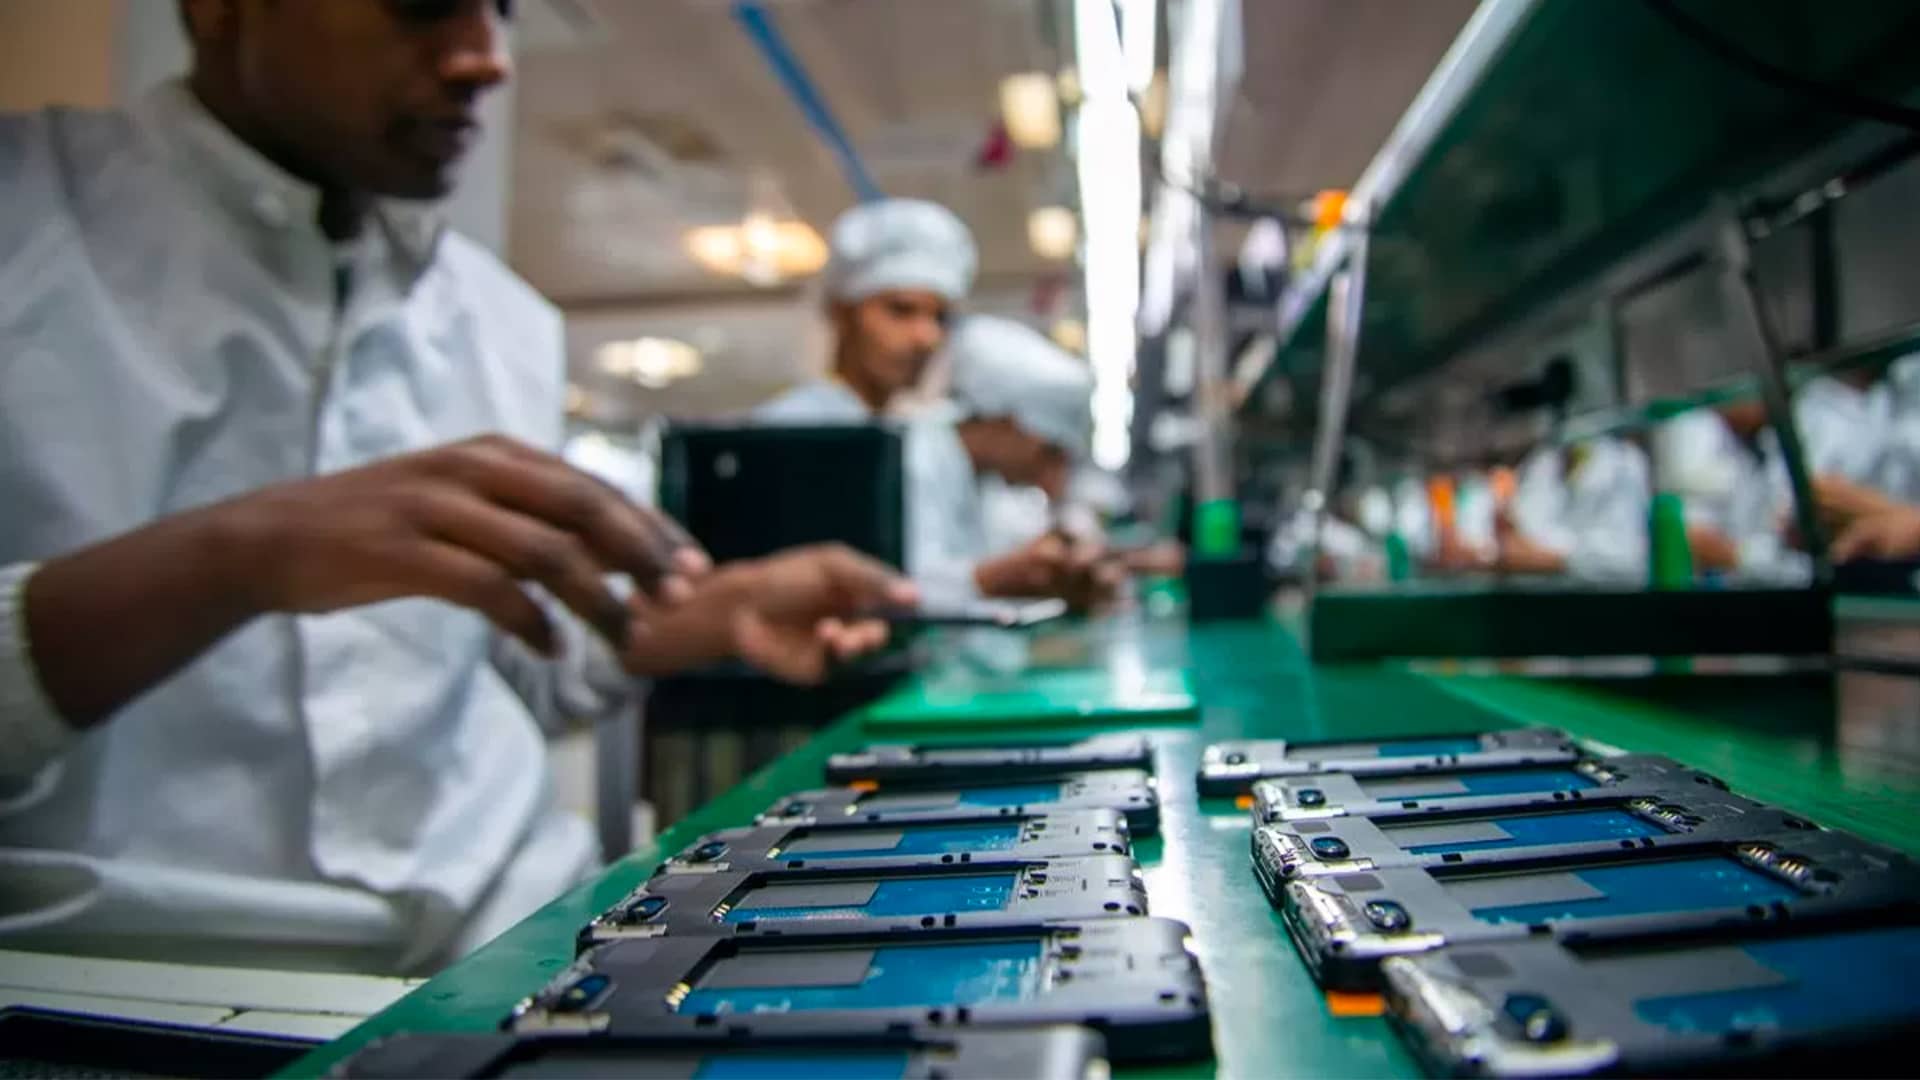 وزیر فناوری اطلاعات واشناو گفت: تولید تلفن همراه هند ۴۴ میلیارد دلار و صادرات ۱۱ میلیارد دلار است.